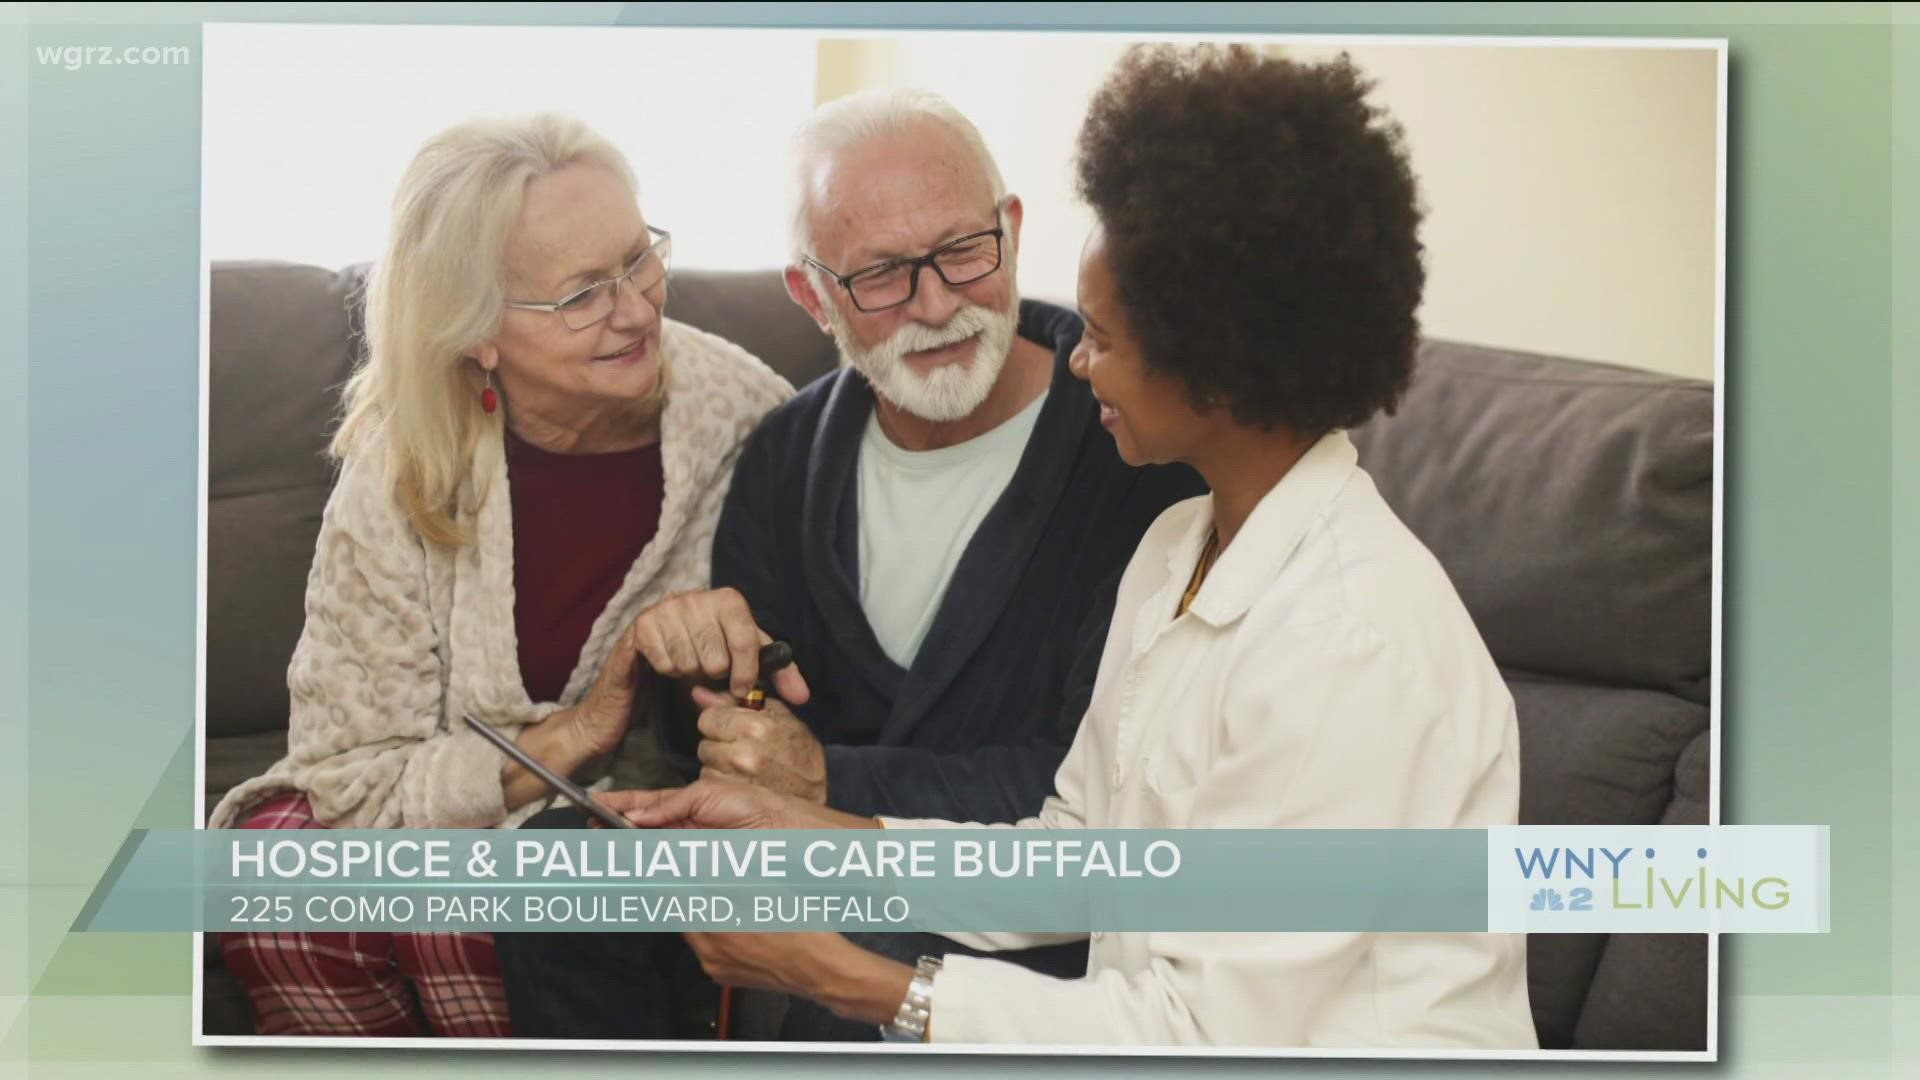 WNY Living - May 7 - Hospice & Palliative Care Buffalo (THIS VIDEO IS SPONSORED BY HOSPICE & PALLIATIVE CARE BUFFALO)